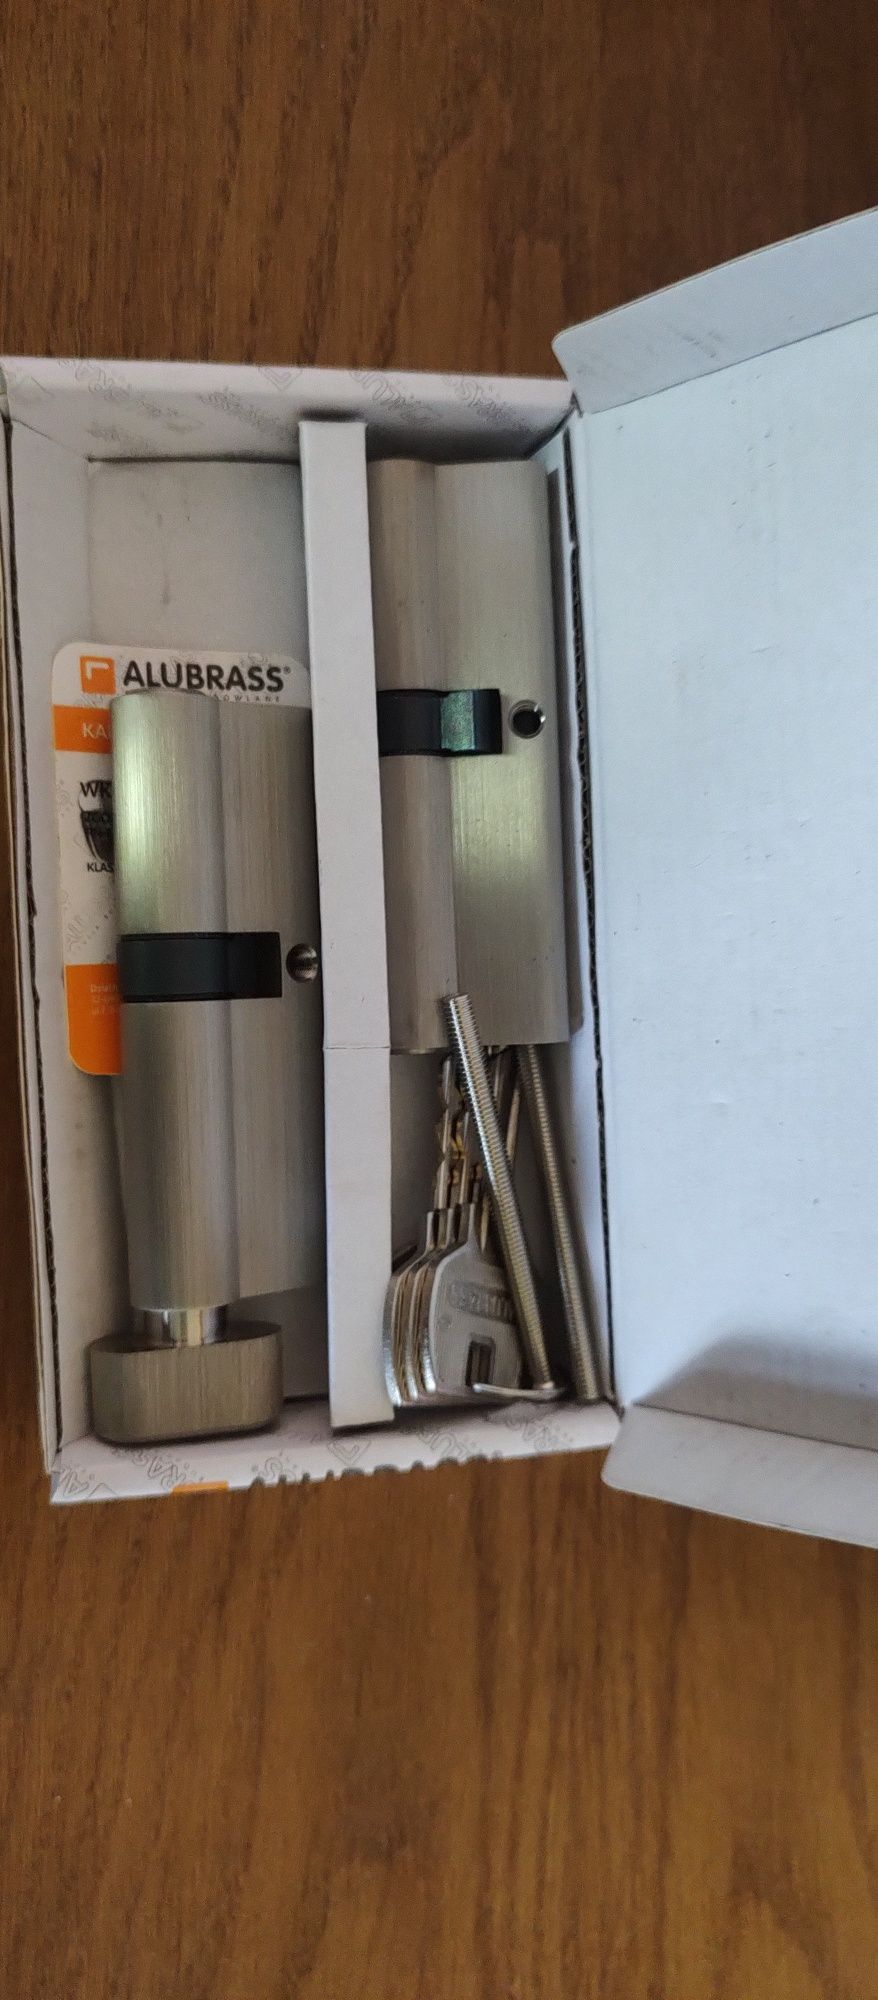 Alubrass nowe podwójne wkładki zamka drzwi 9cm z kartą 5 kluczy